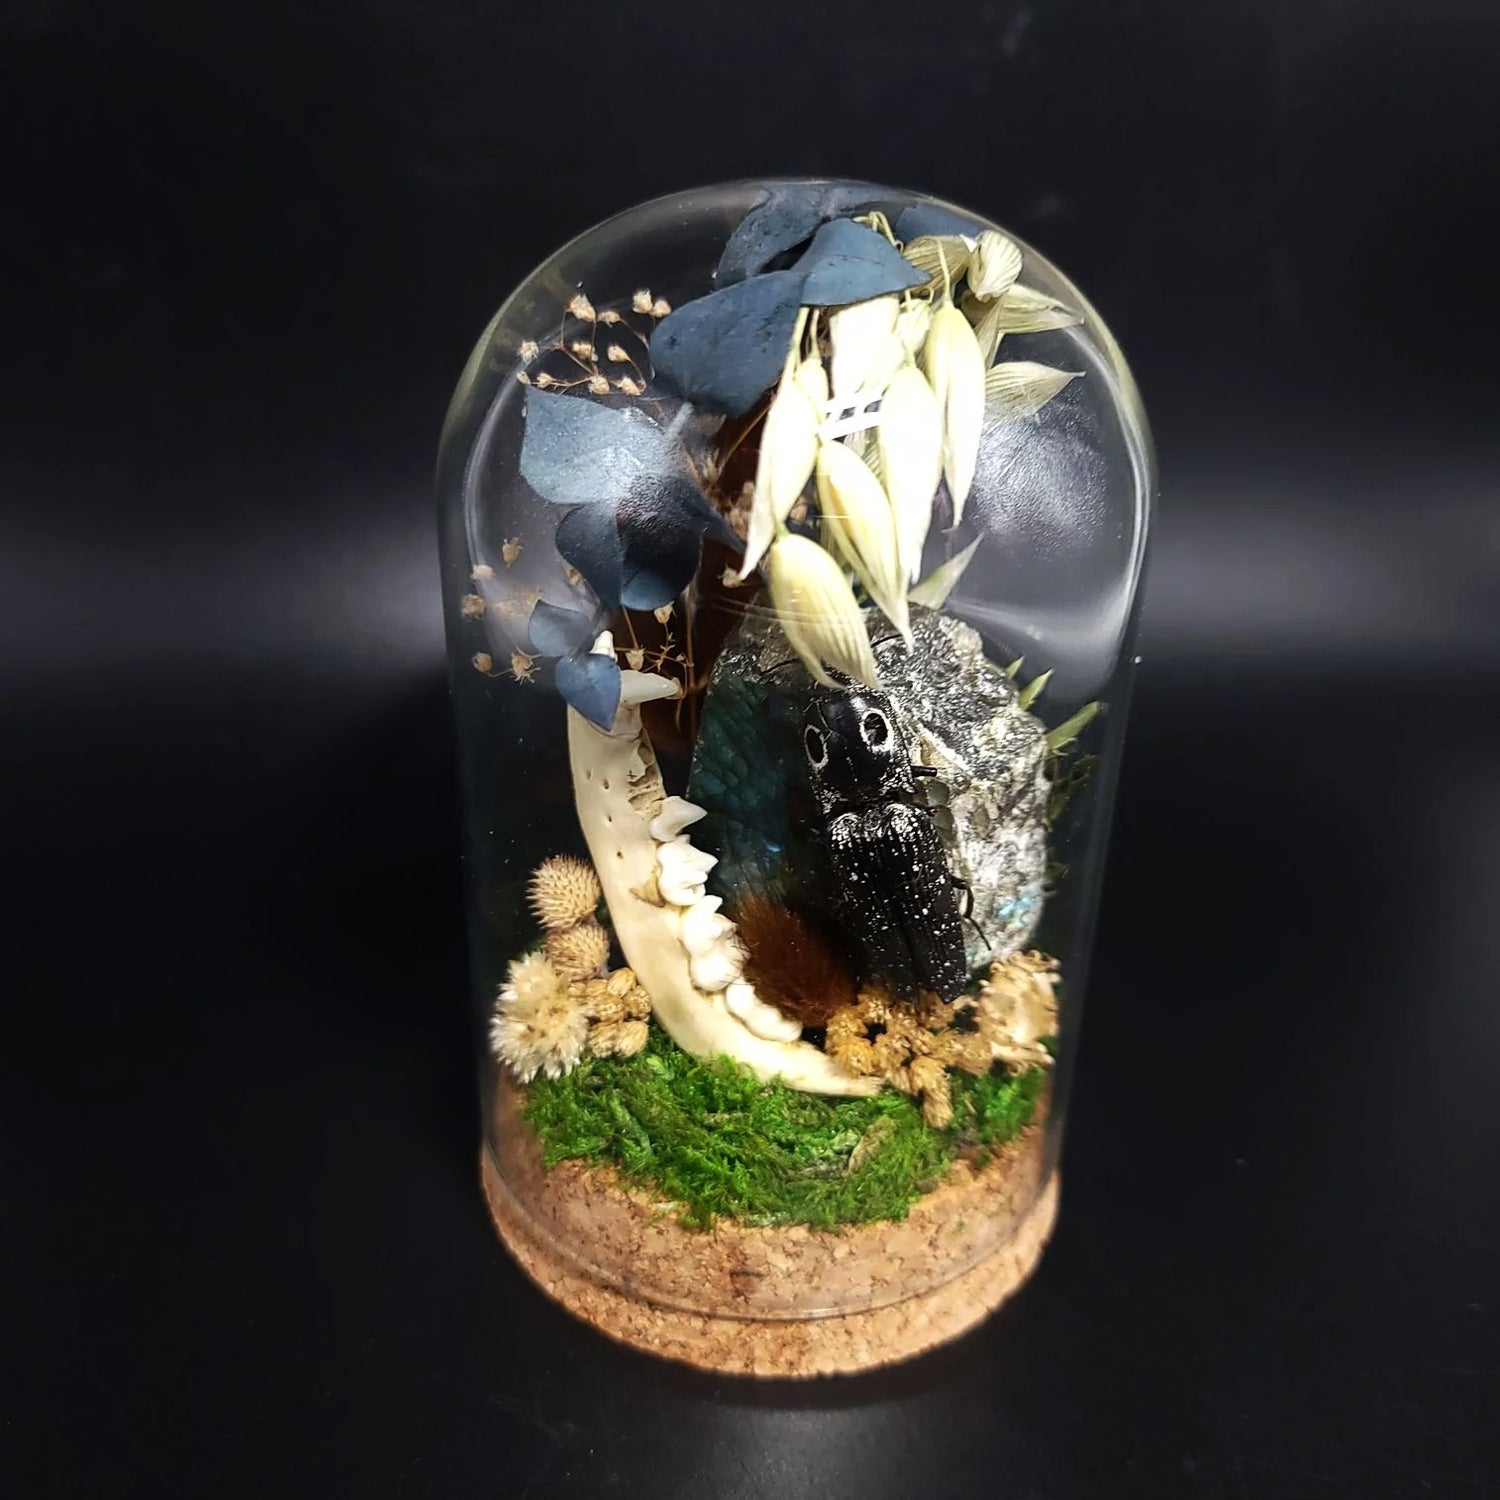 Labradorite, Jackknife Beetle, and Raccoon Mandible Curio Capsule Oddities Jar - Elevated Metaphysical